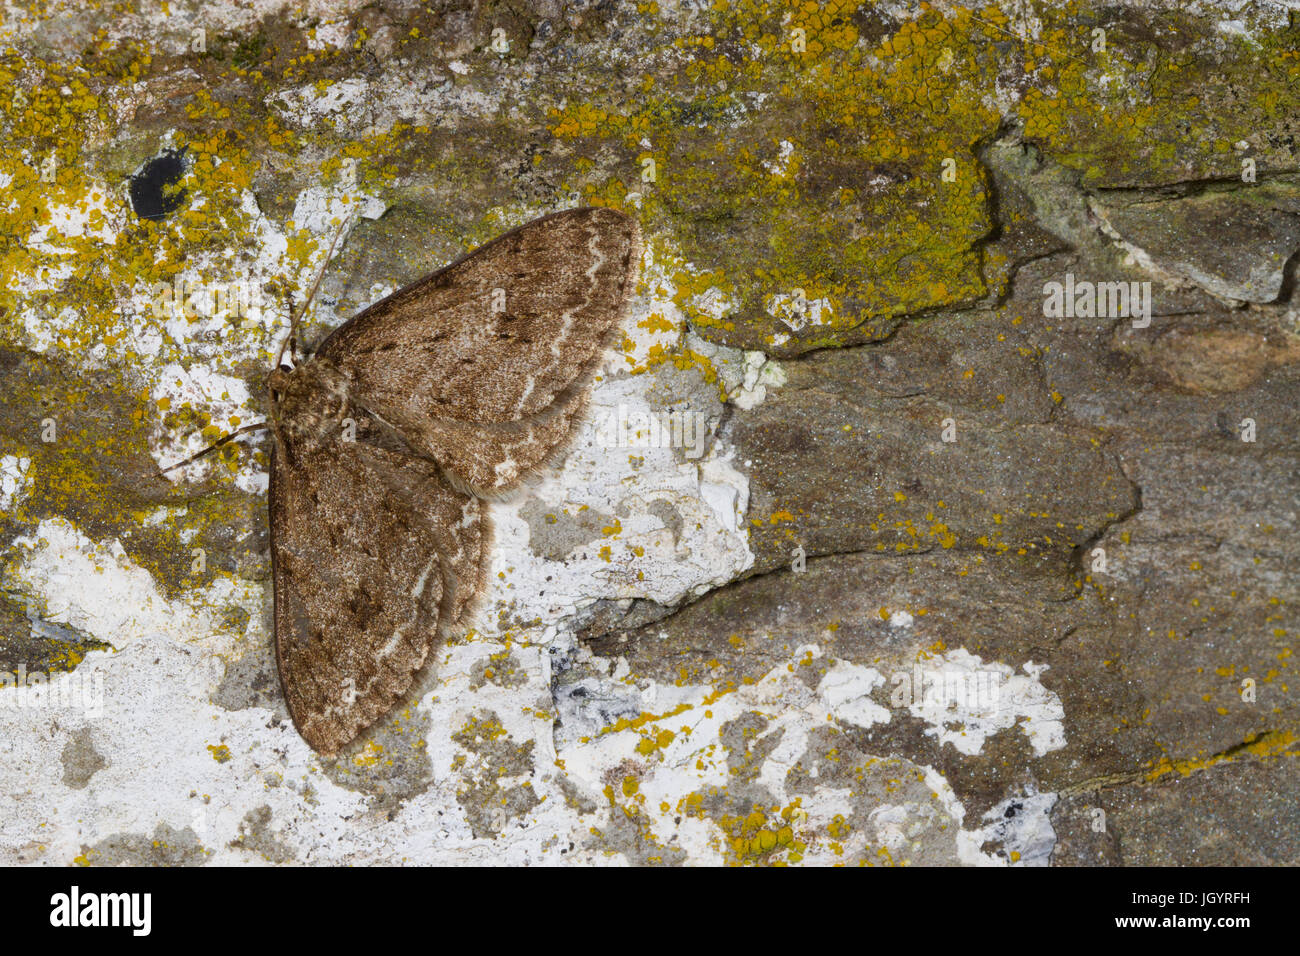 L'Ectropis crepuscularia (Engrêlée) papillon adulte reposant sur un vieux mur. Powys, Pays de Galles. Avril. Banque D'Images